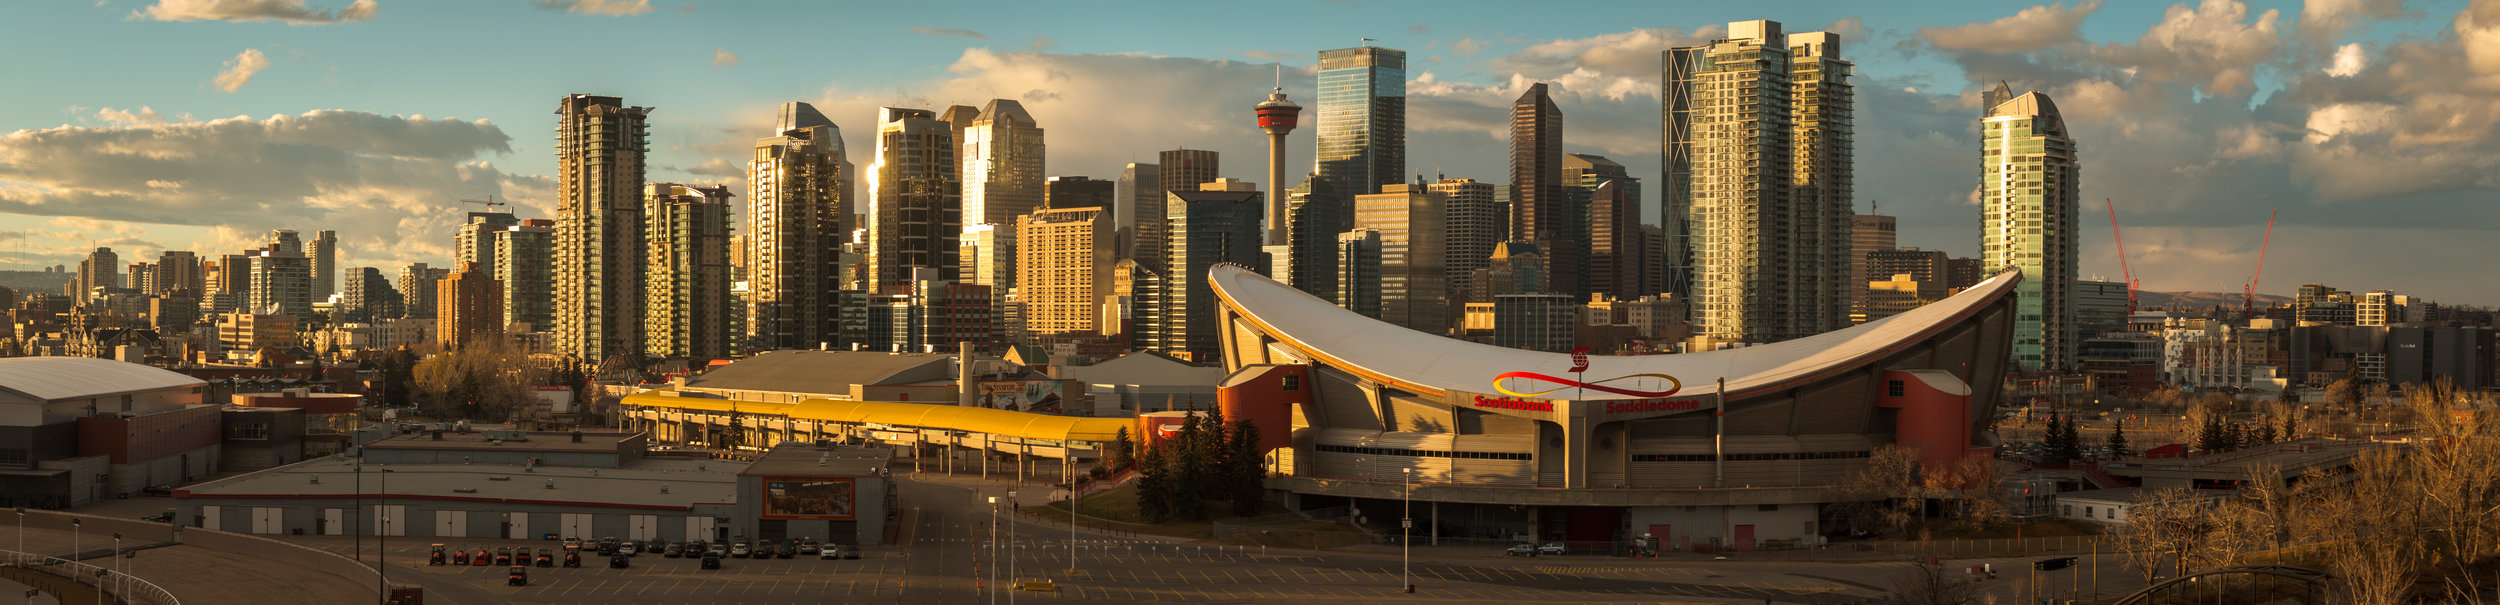 Downtown Calgary and the Saddledome